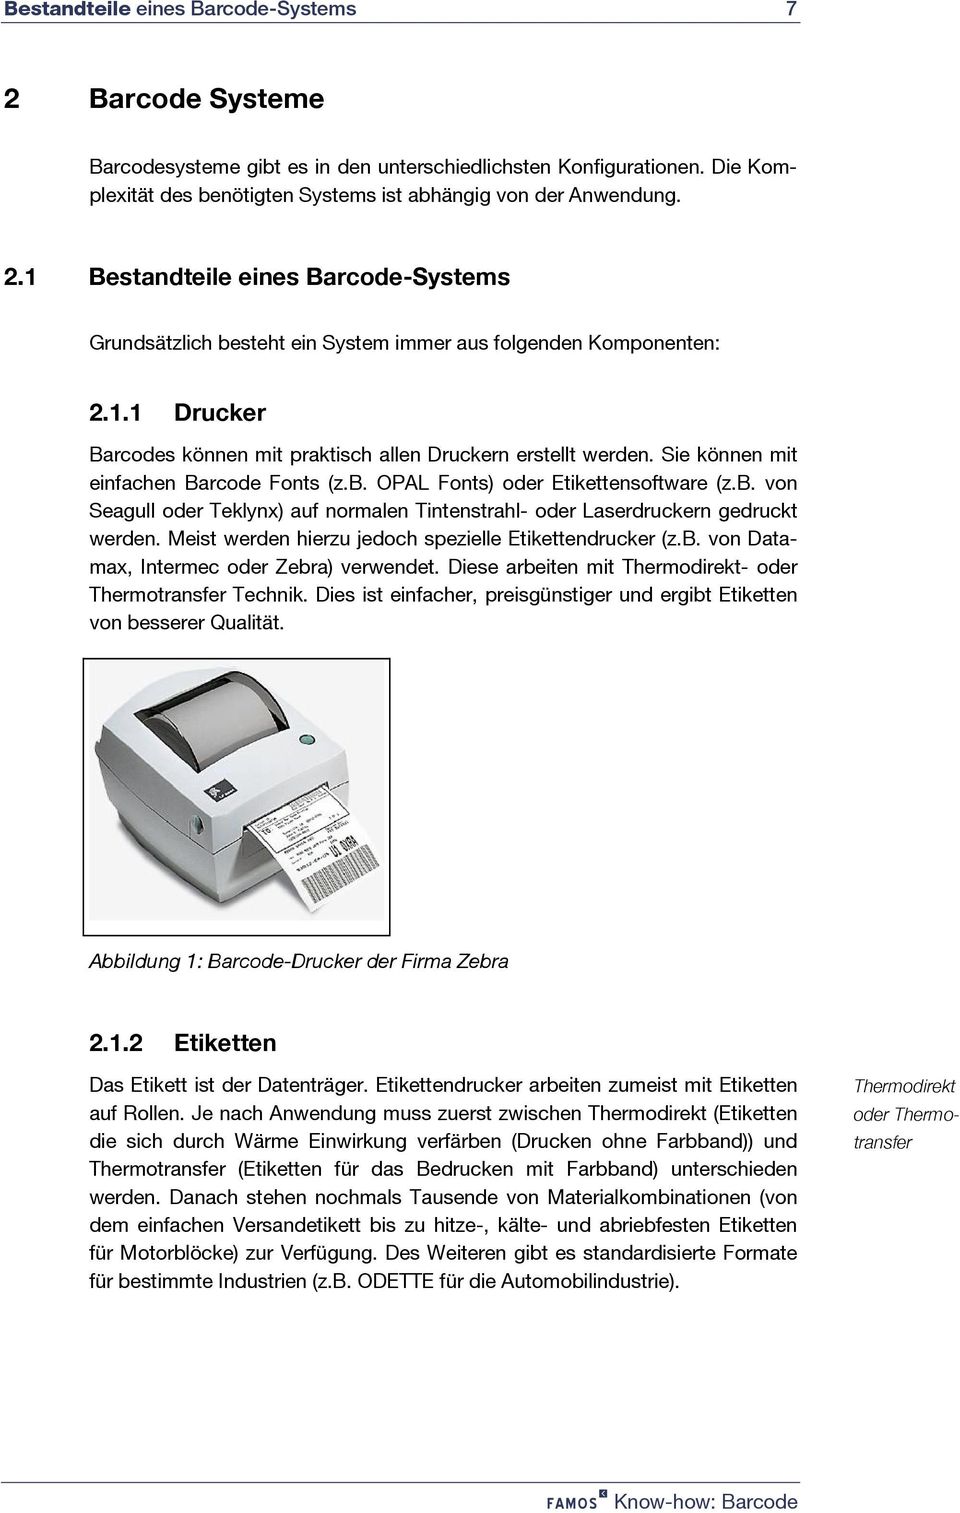 OPAL Fonts) oder Etikettensoftware (z.b. von Seagull oder Teklynx) auf normalen Tintenstrahl- oder Laserdruckern gedruckt werden. Meist werden hierzu jedoch spezielle Etikettendrucker (z.b. von Datamax, Intermec oder Zebra) verwendet.